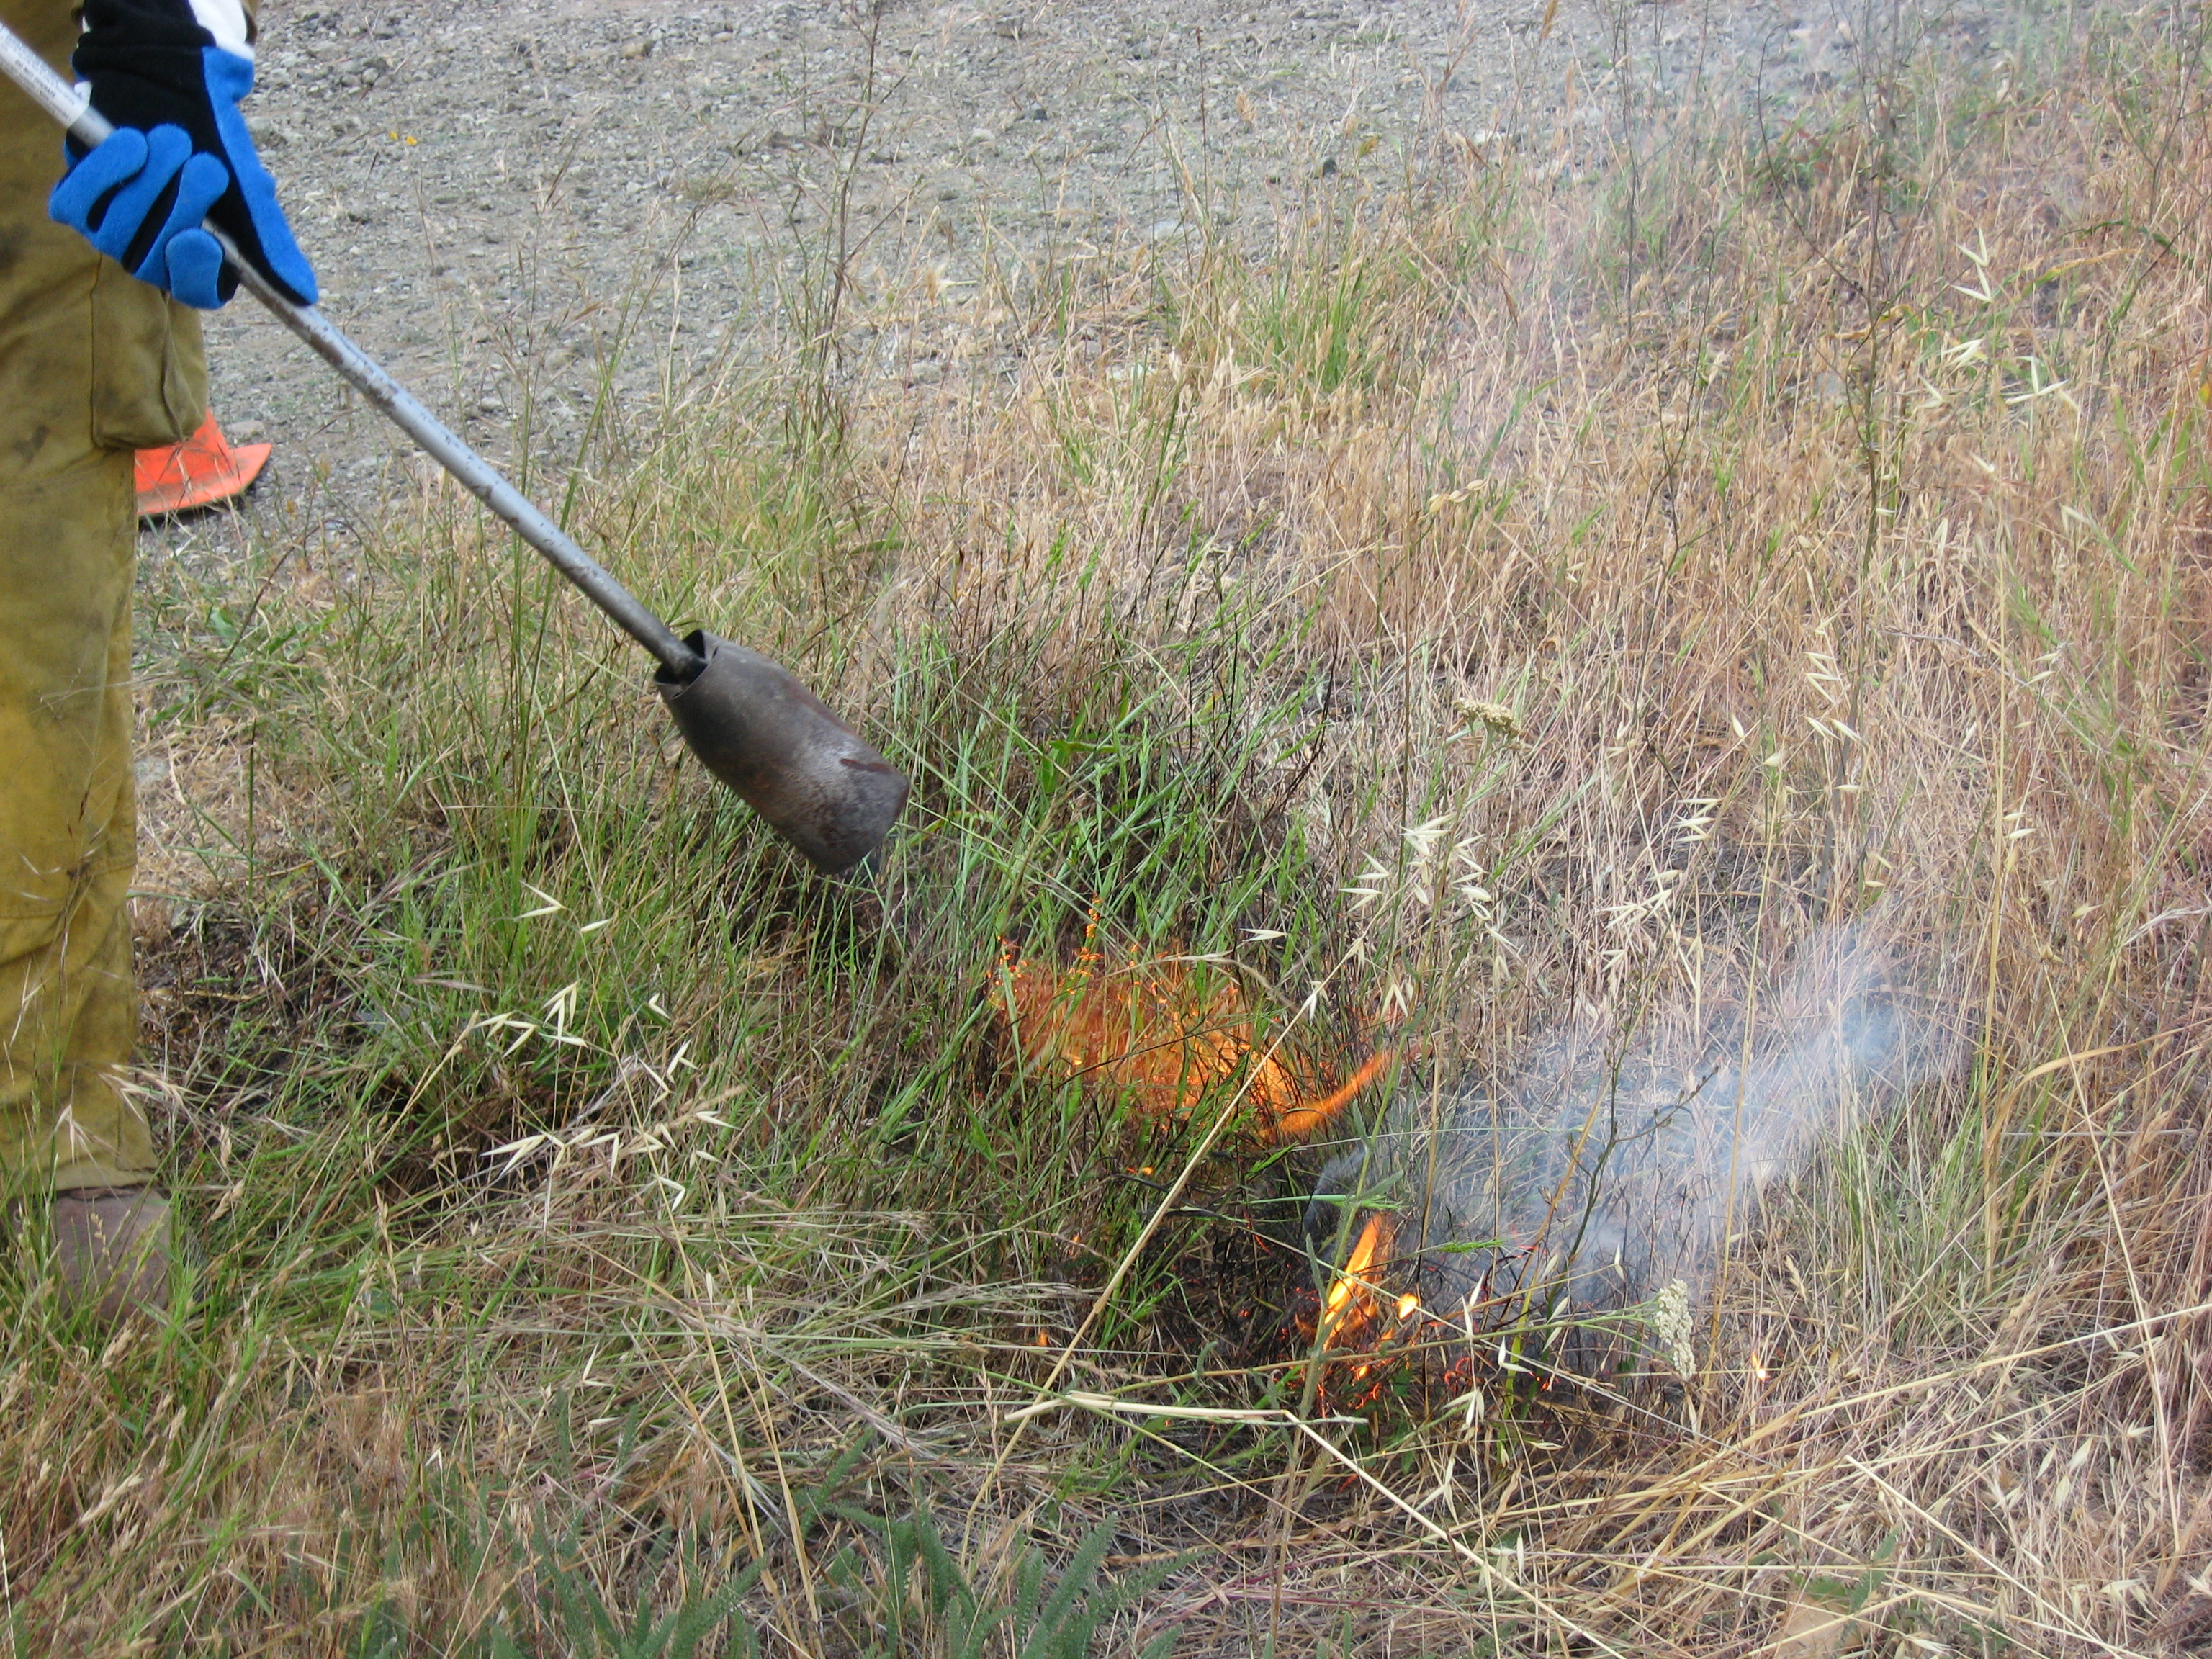 Goatgrass management using a flame torch